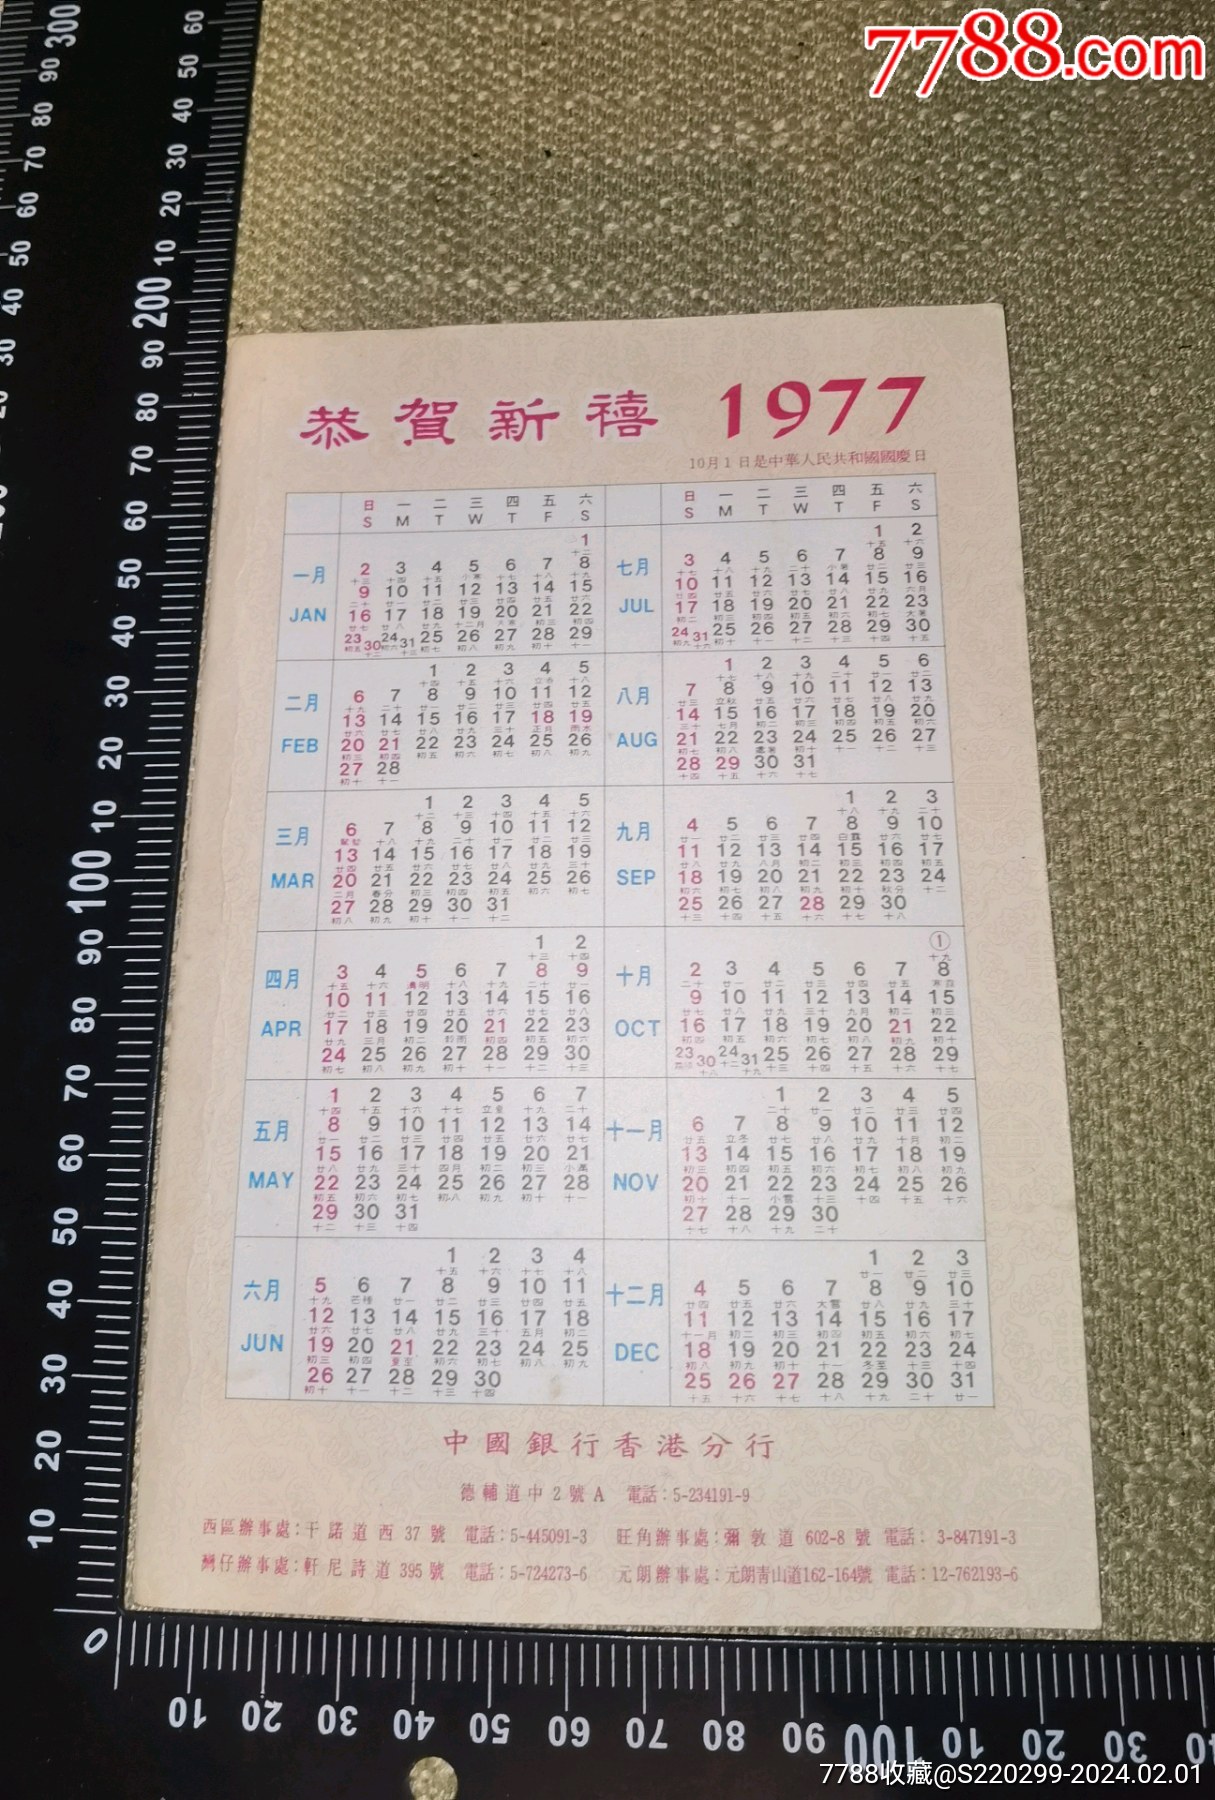 恭贺新禧1977中国银行香港分行很老很有意头的香港银行年历卡收藏自然